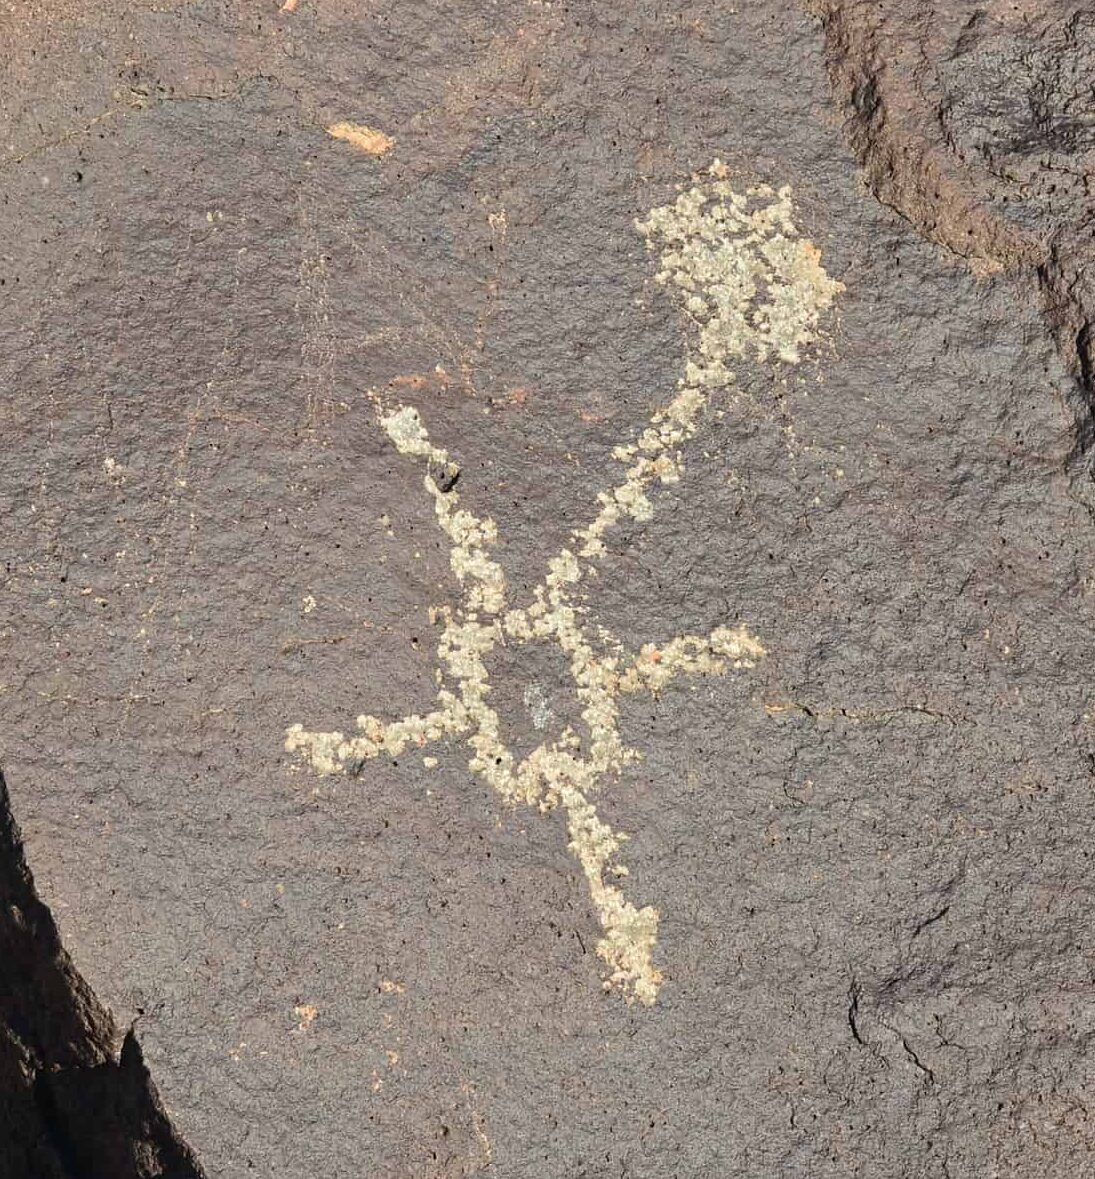 Petroglyph along Mesa Point Trail